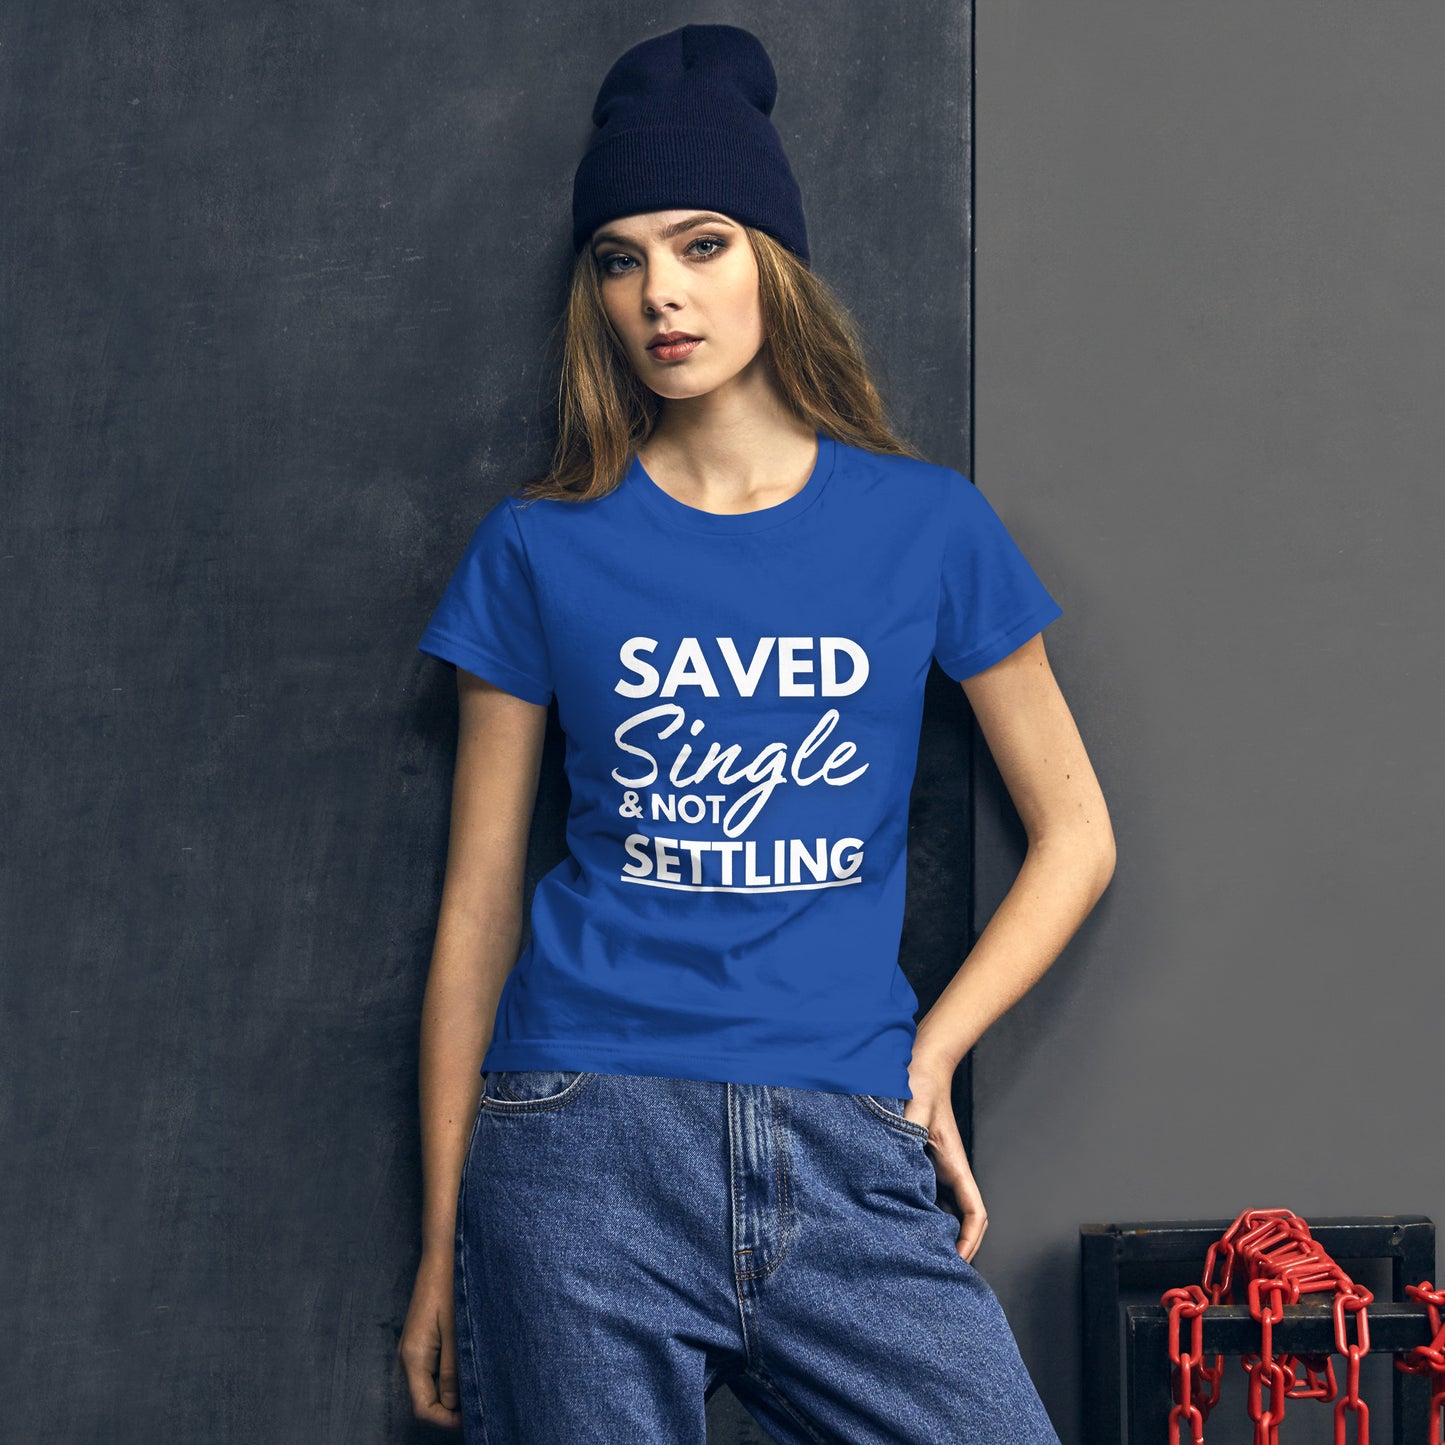 Saved, Single, & Not Settling Women's short sleeve t-shirt